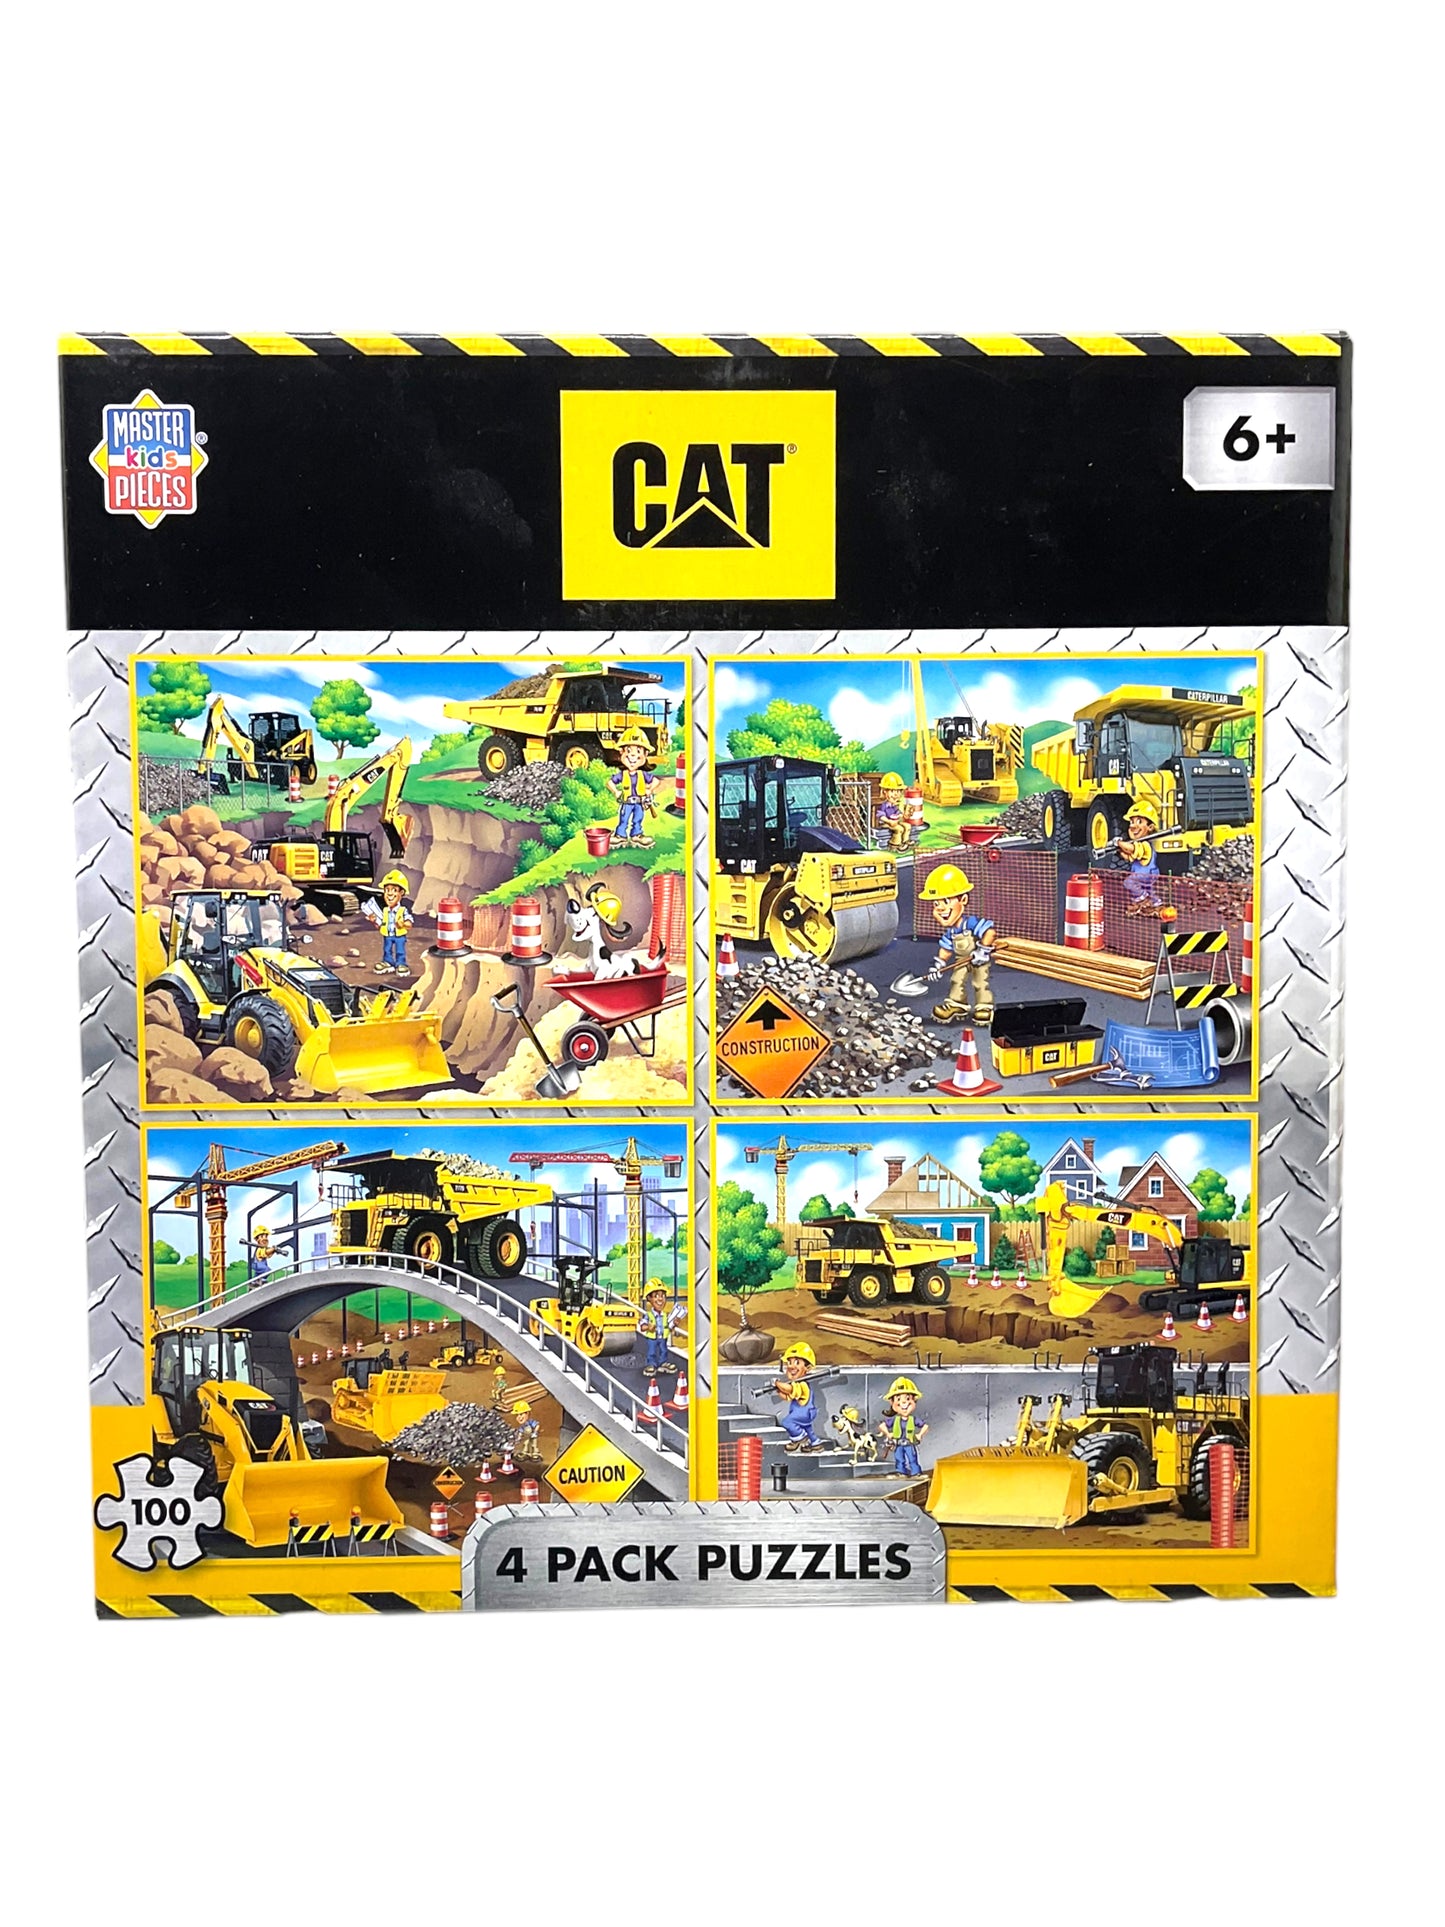 Cat Construction Puzzles